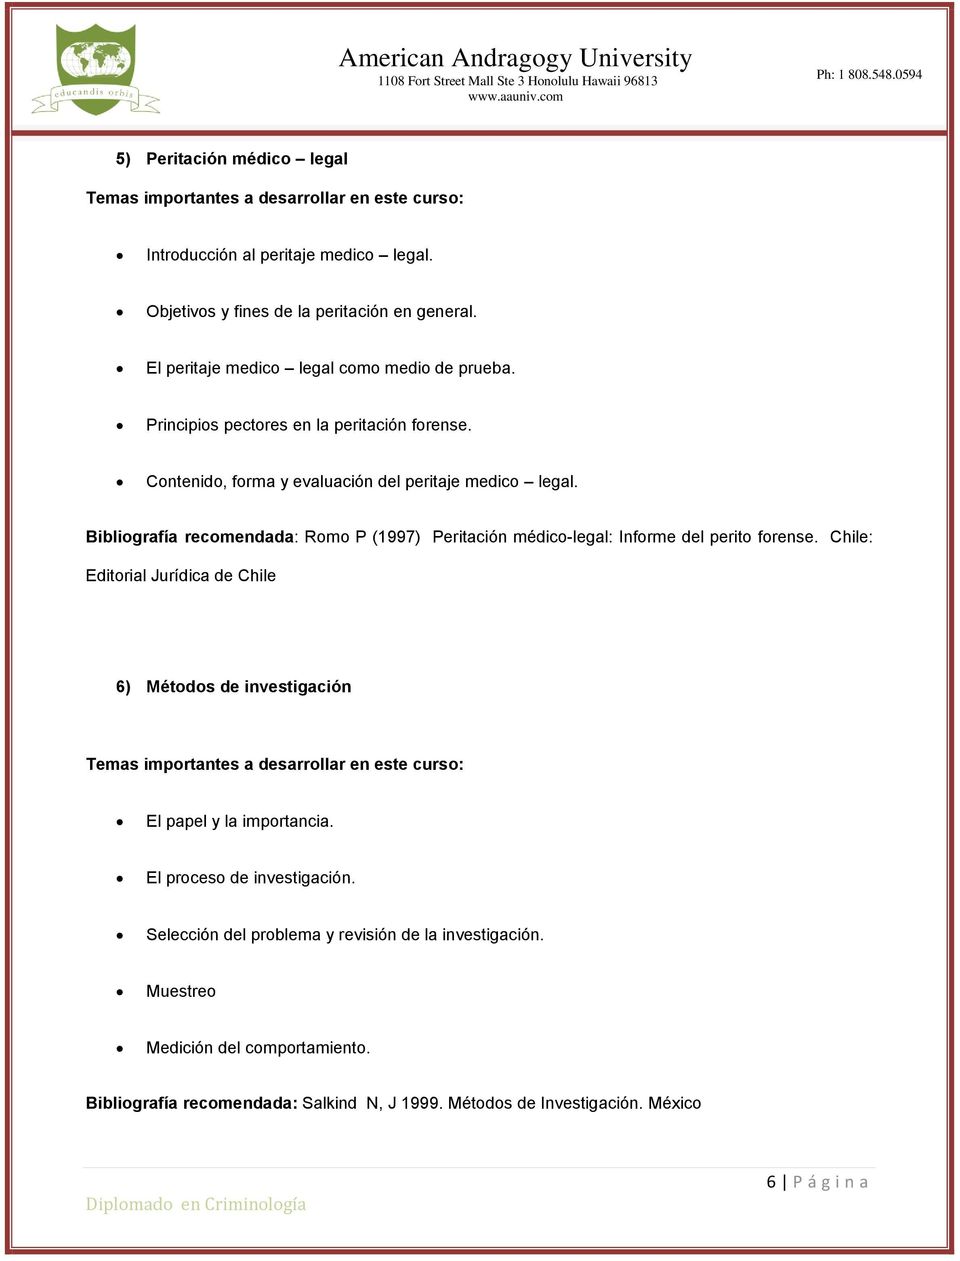 Bibliografía recomendada: Romo P (1997) Peritación médico-legal: Informe del perito forense.